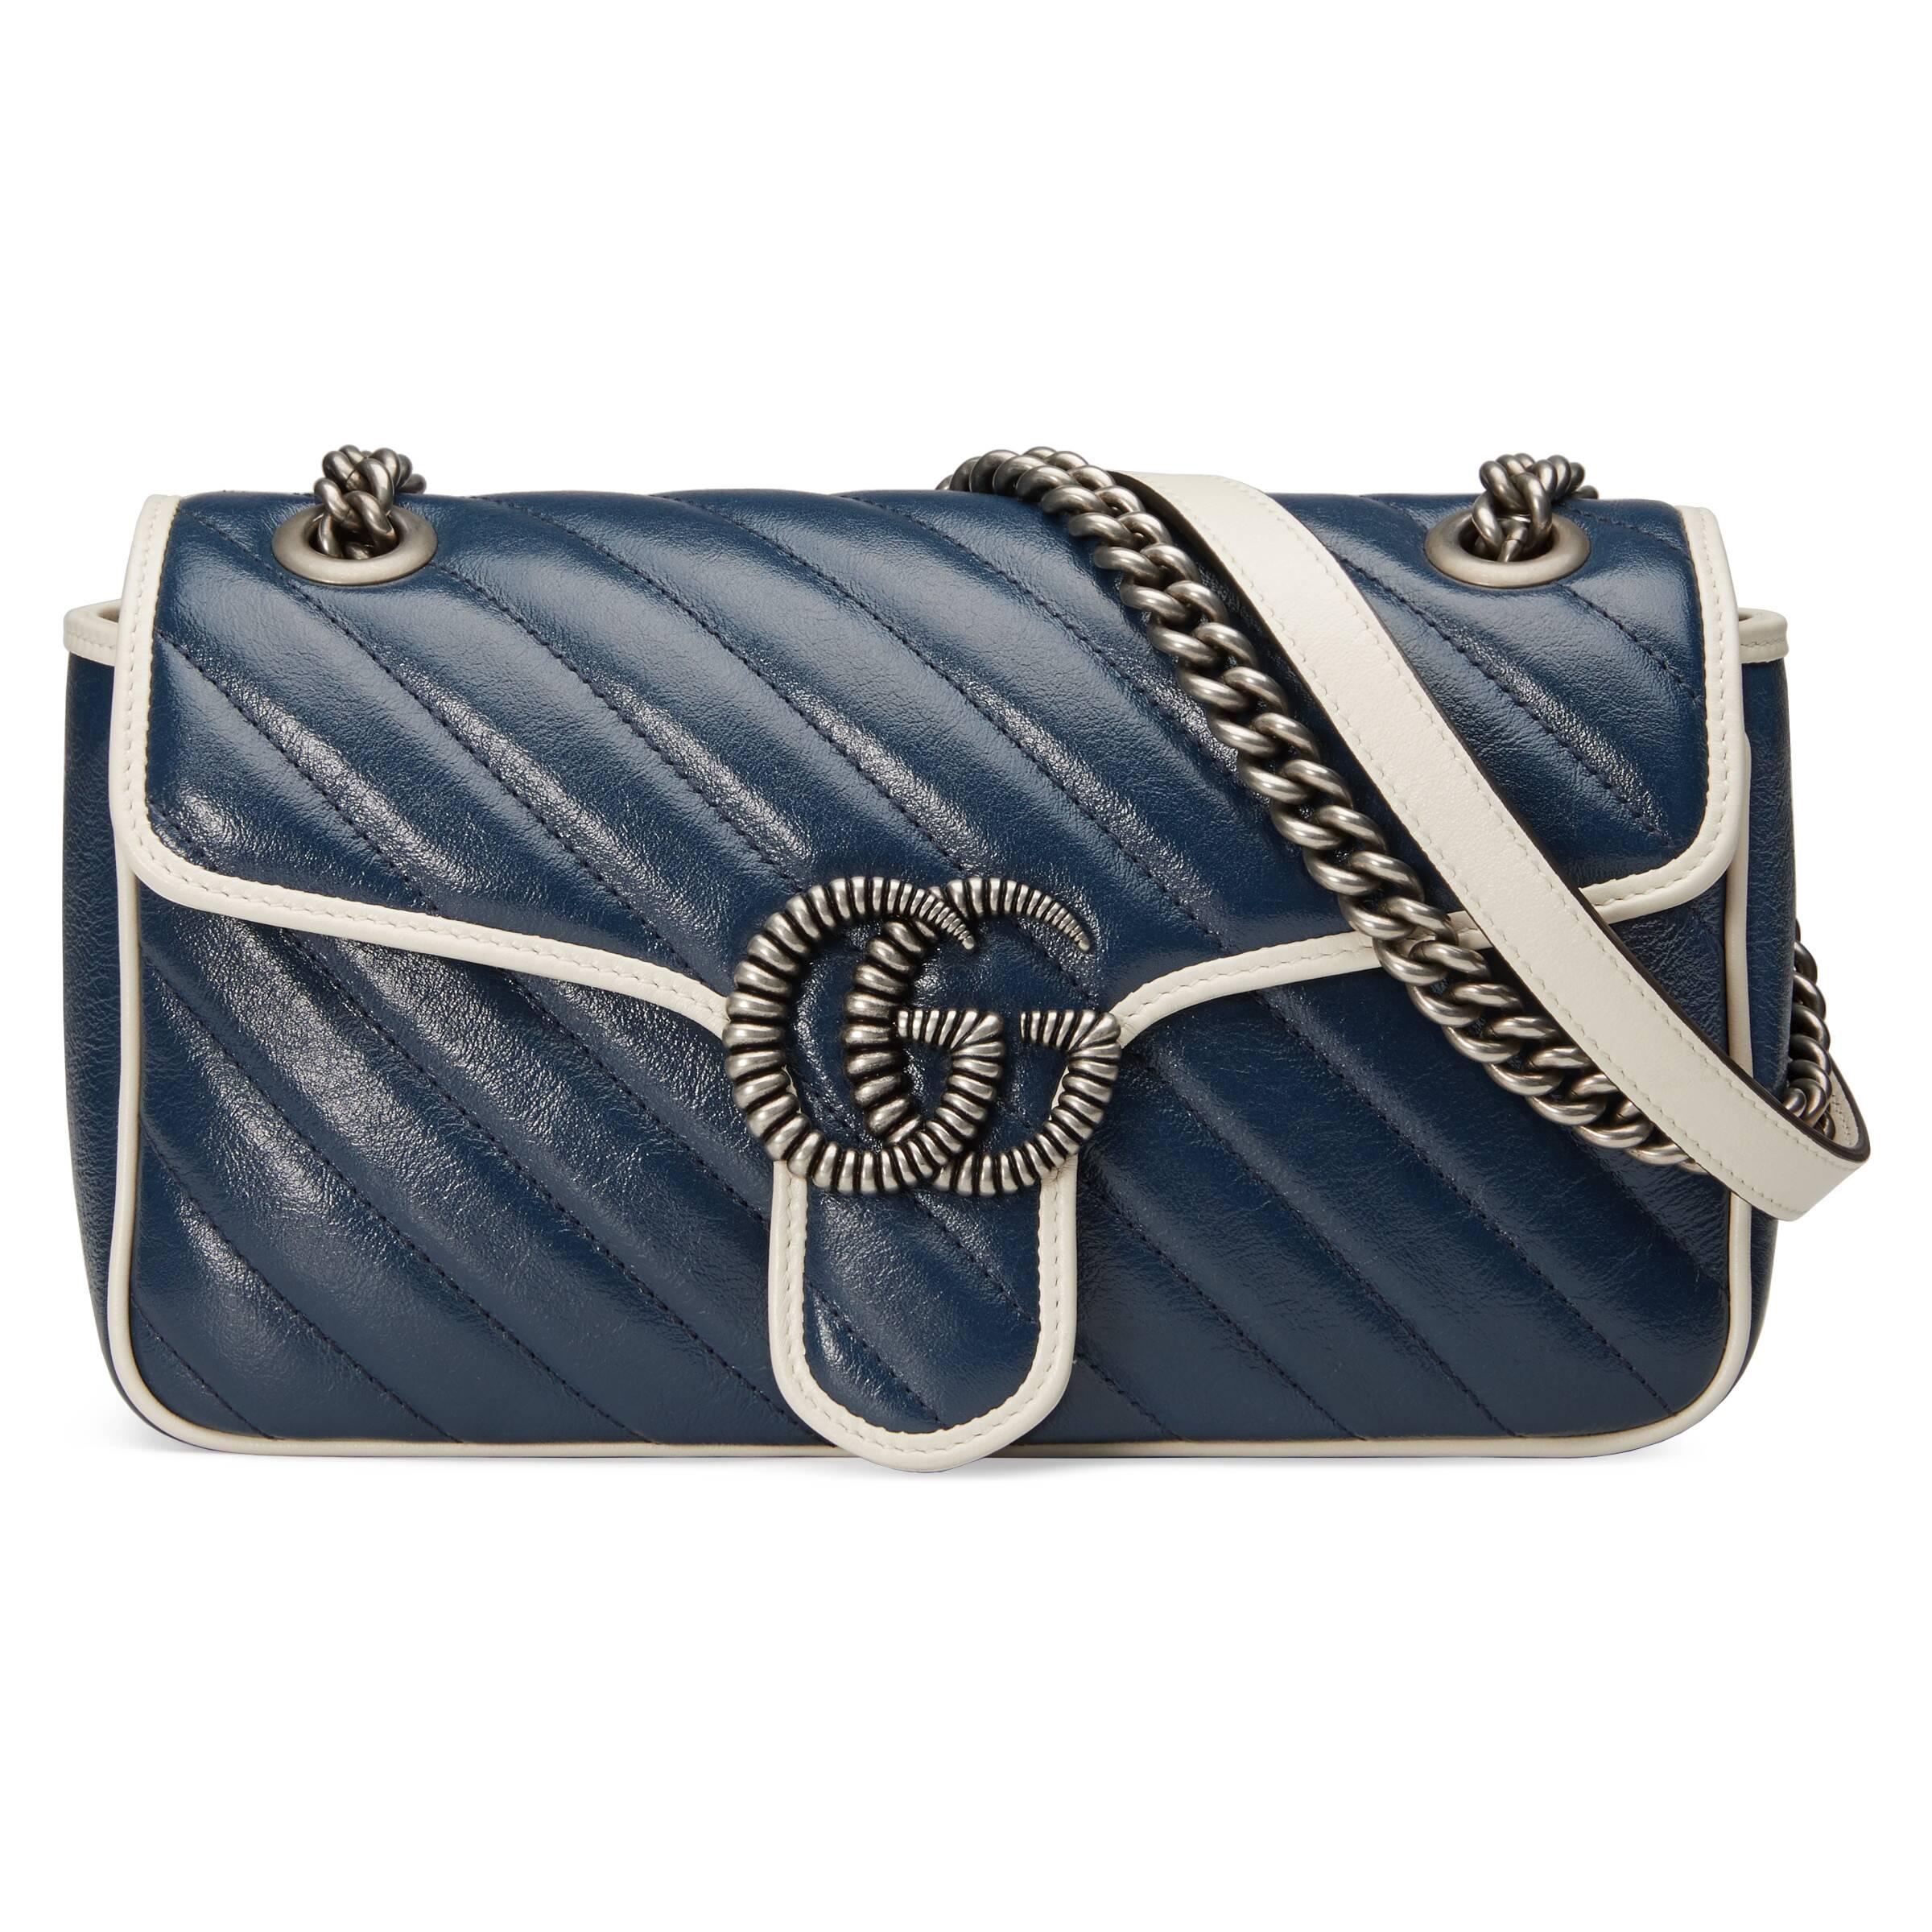 GUCCI Calfskin Matelasse Super Mini GG Marmont Shoulder Bag Porcelain Light  Blue 1101495